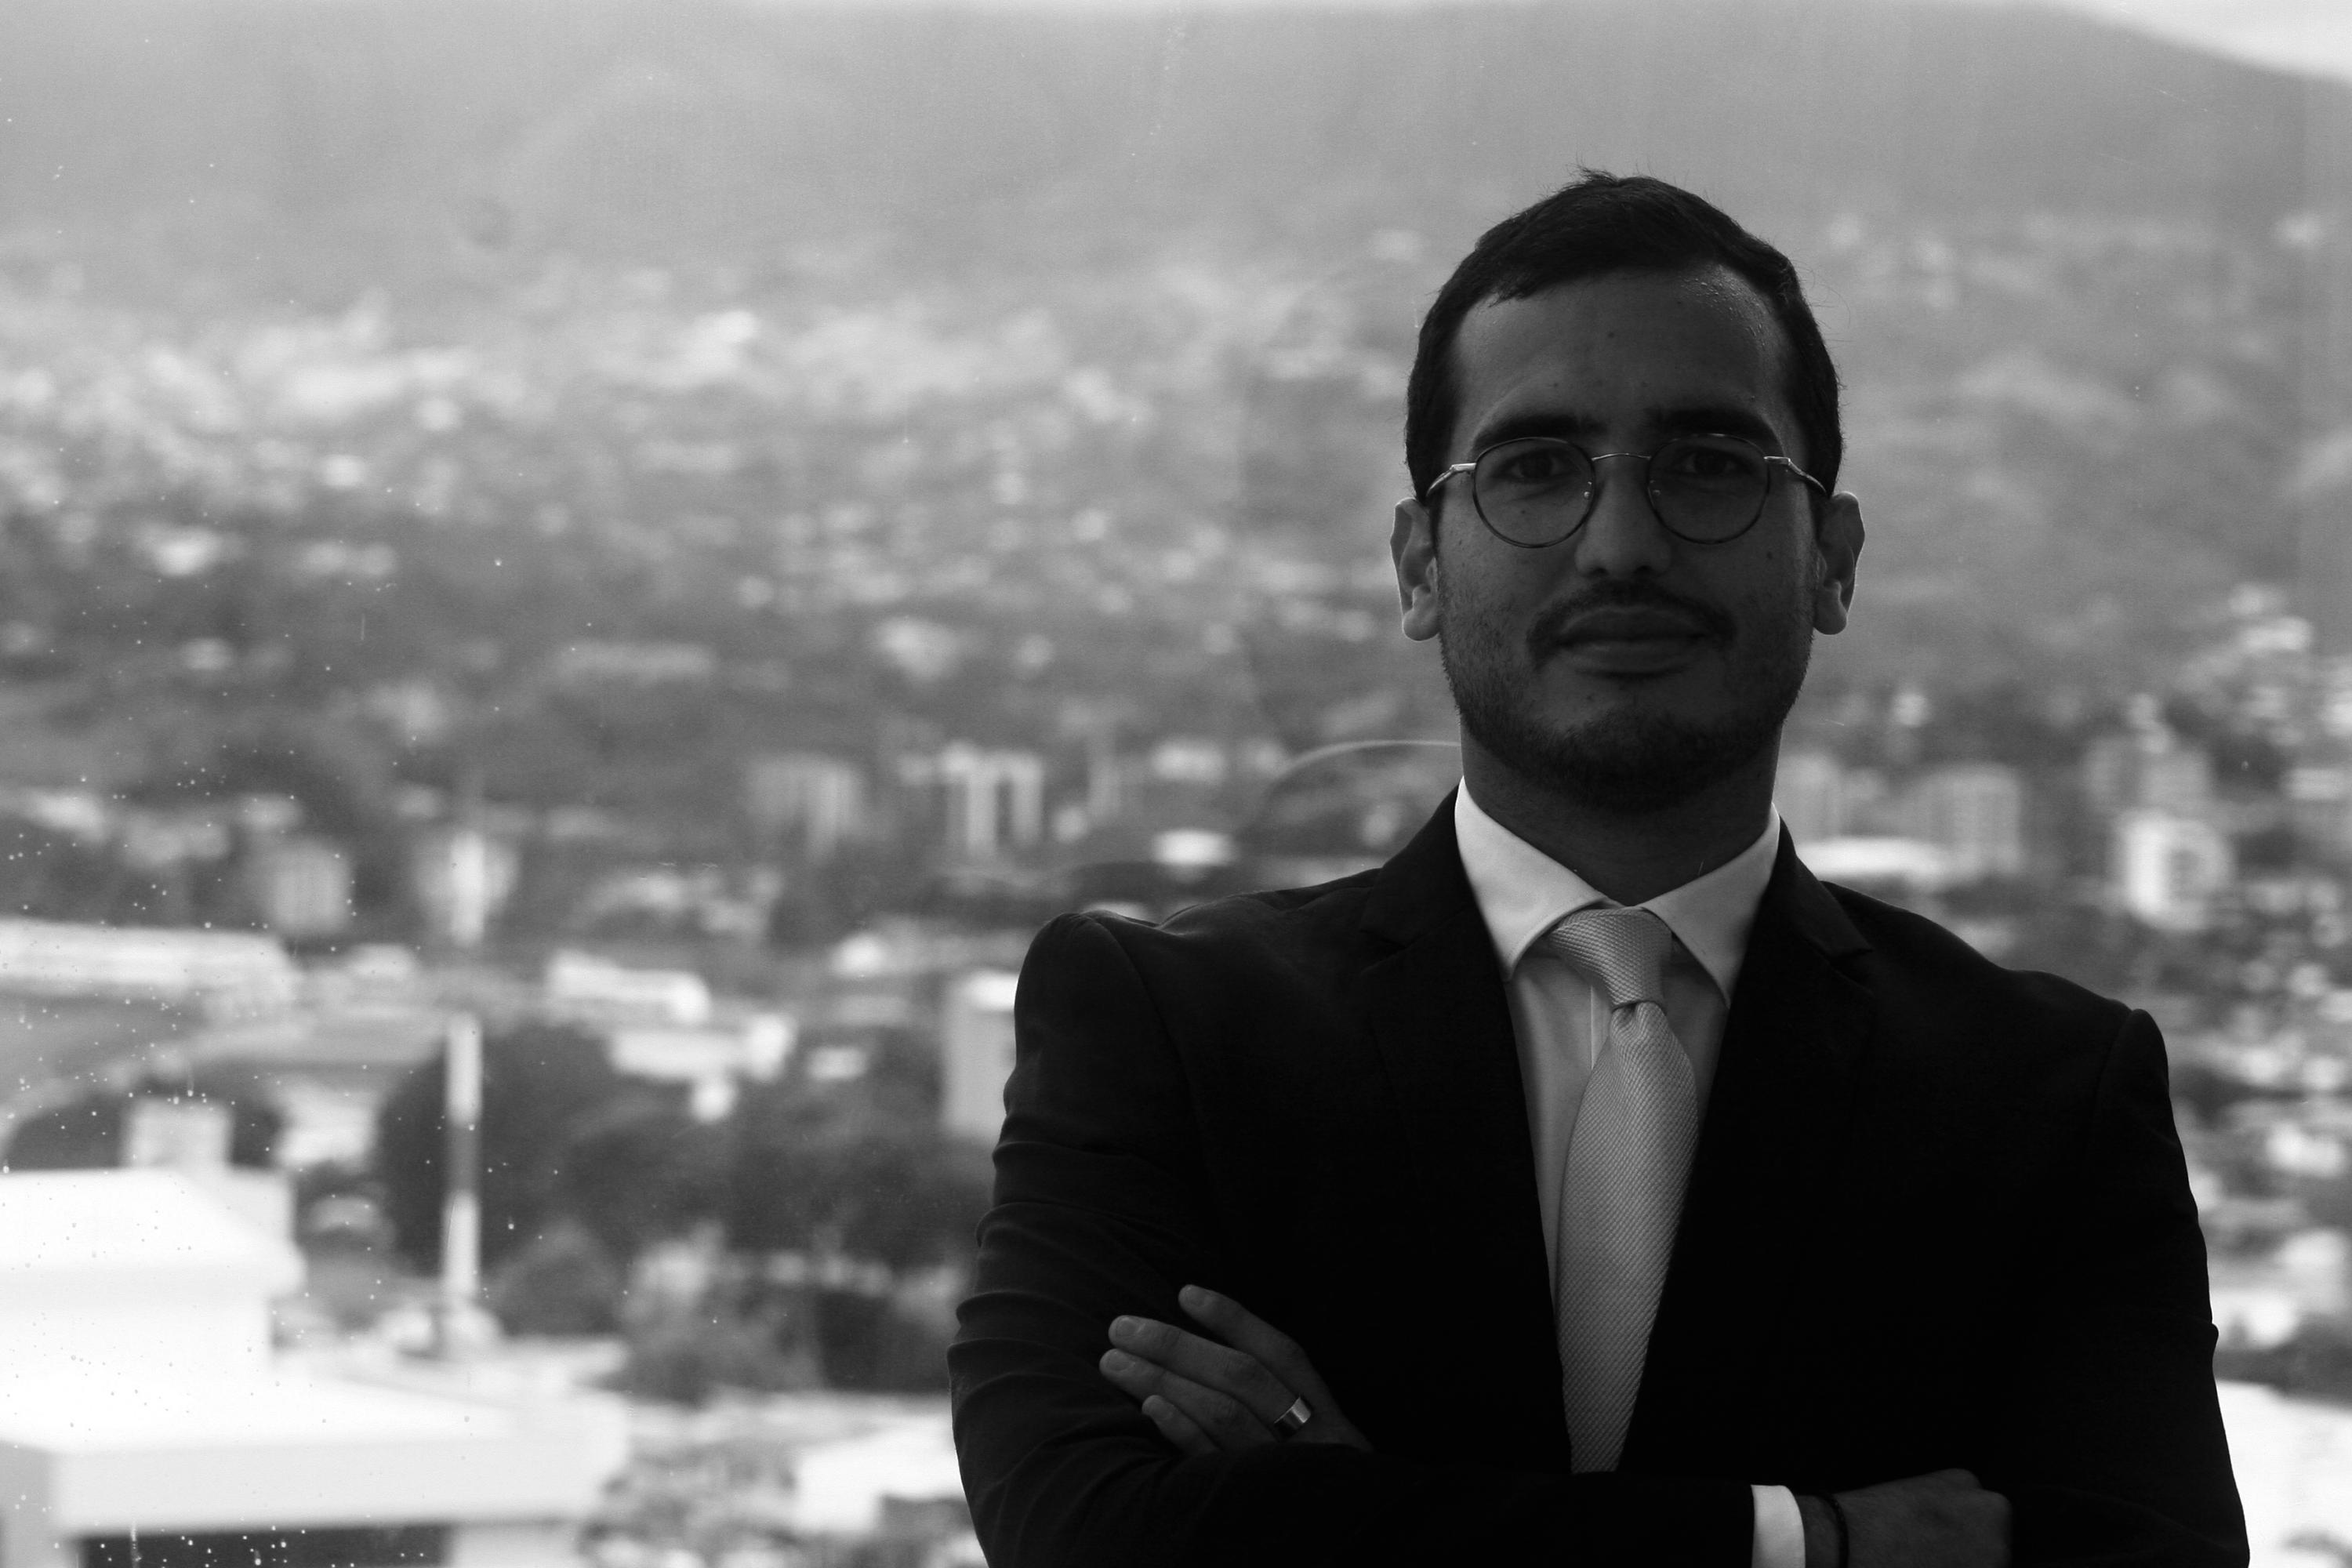 Herman Duarte es abogado fundador de Hduarte Legal y Fundación Igualitxs y autor del libro ¿Es Justificable discriminar? Una Discusión Cultural Sobre Estado de Derecho, Libertades y Sexualidad”,  publicado en Madrid por la editorial Aranzandi de Thomson Reuters.